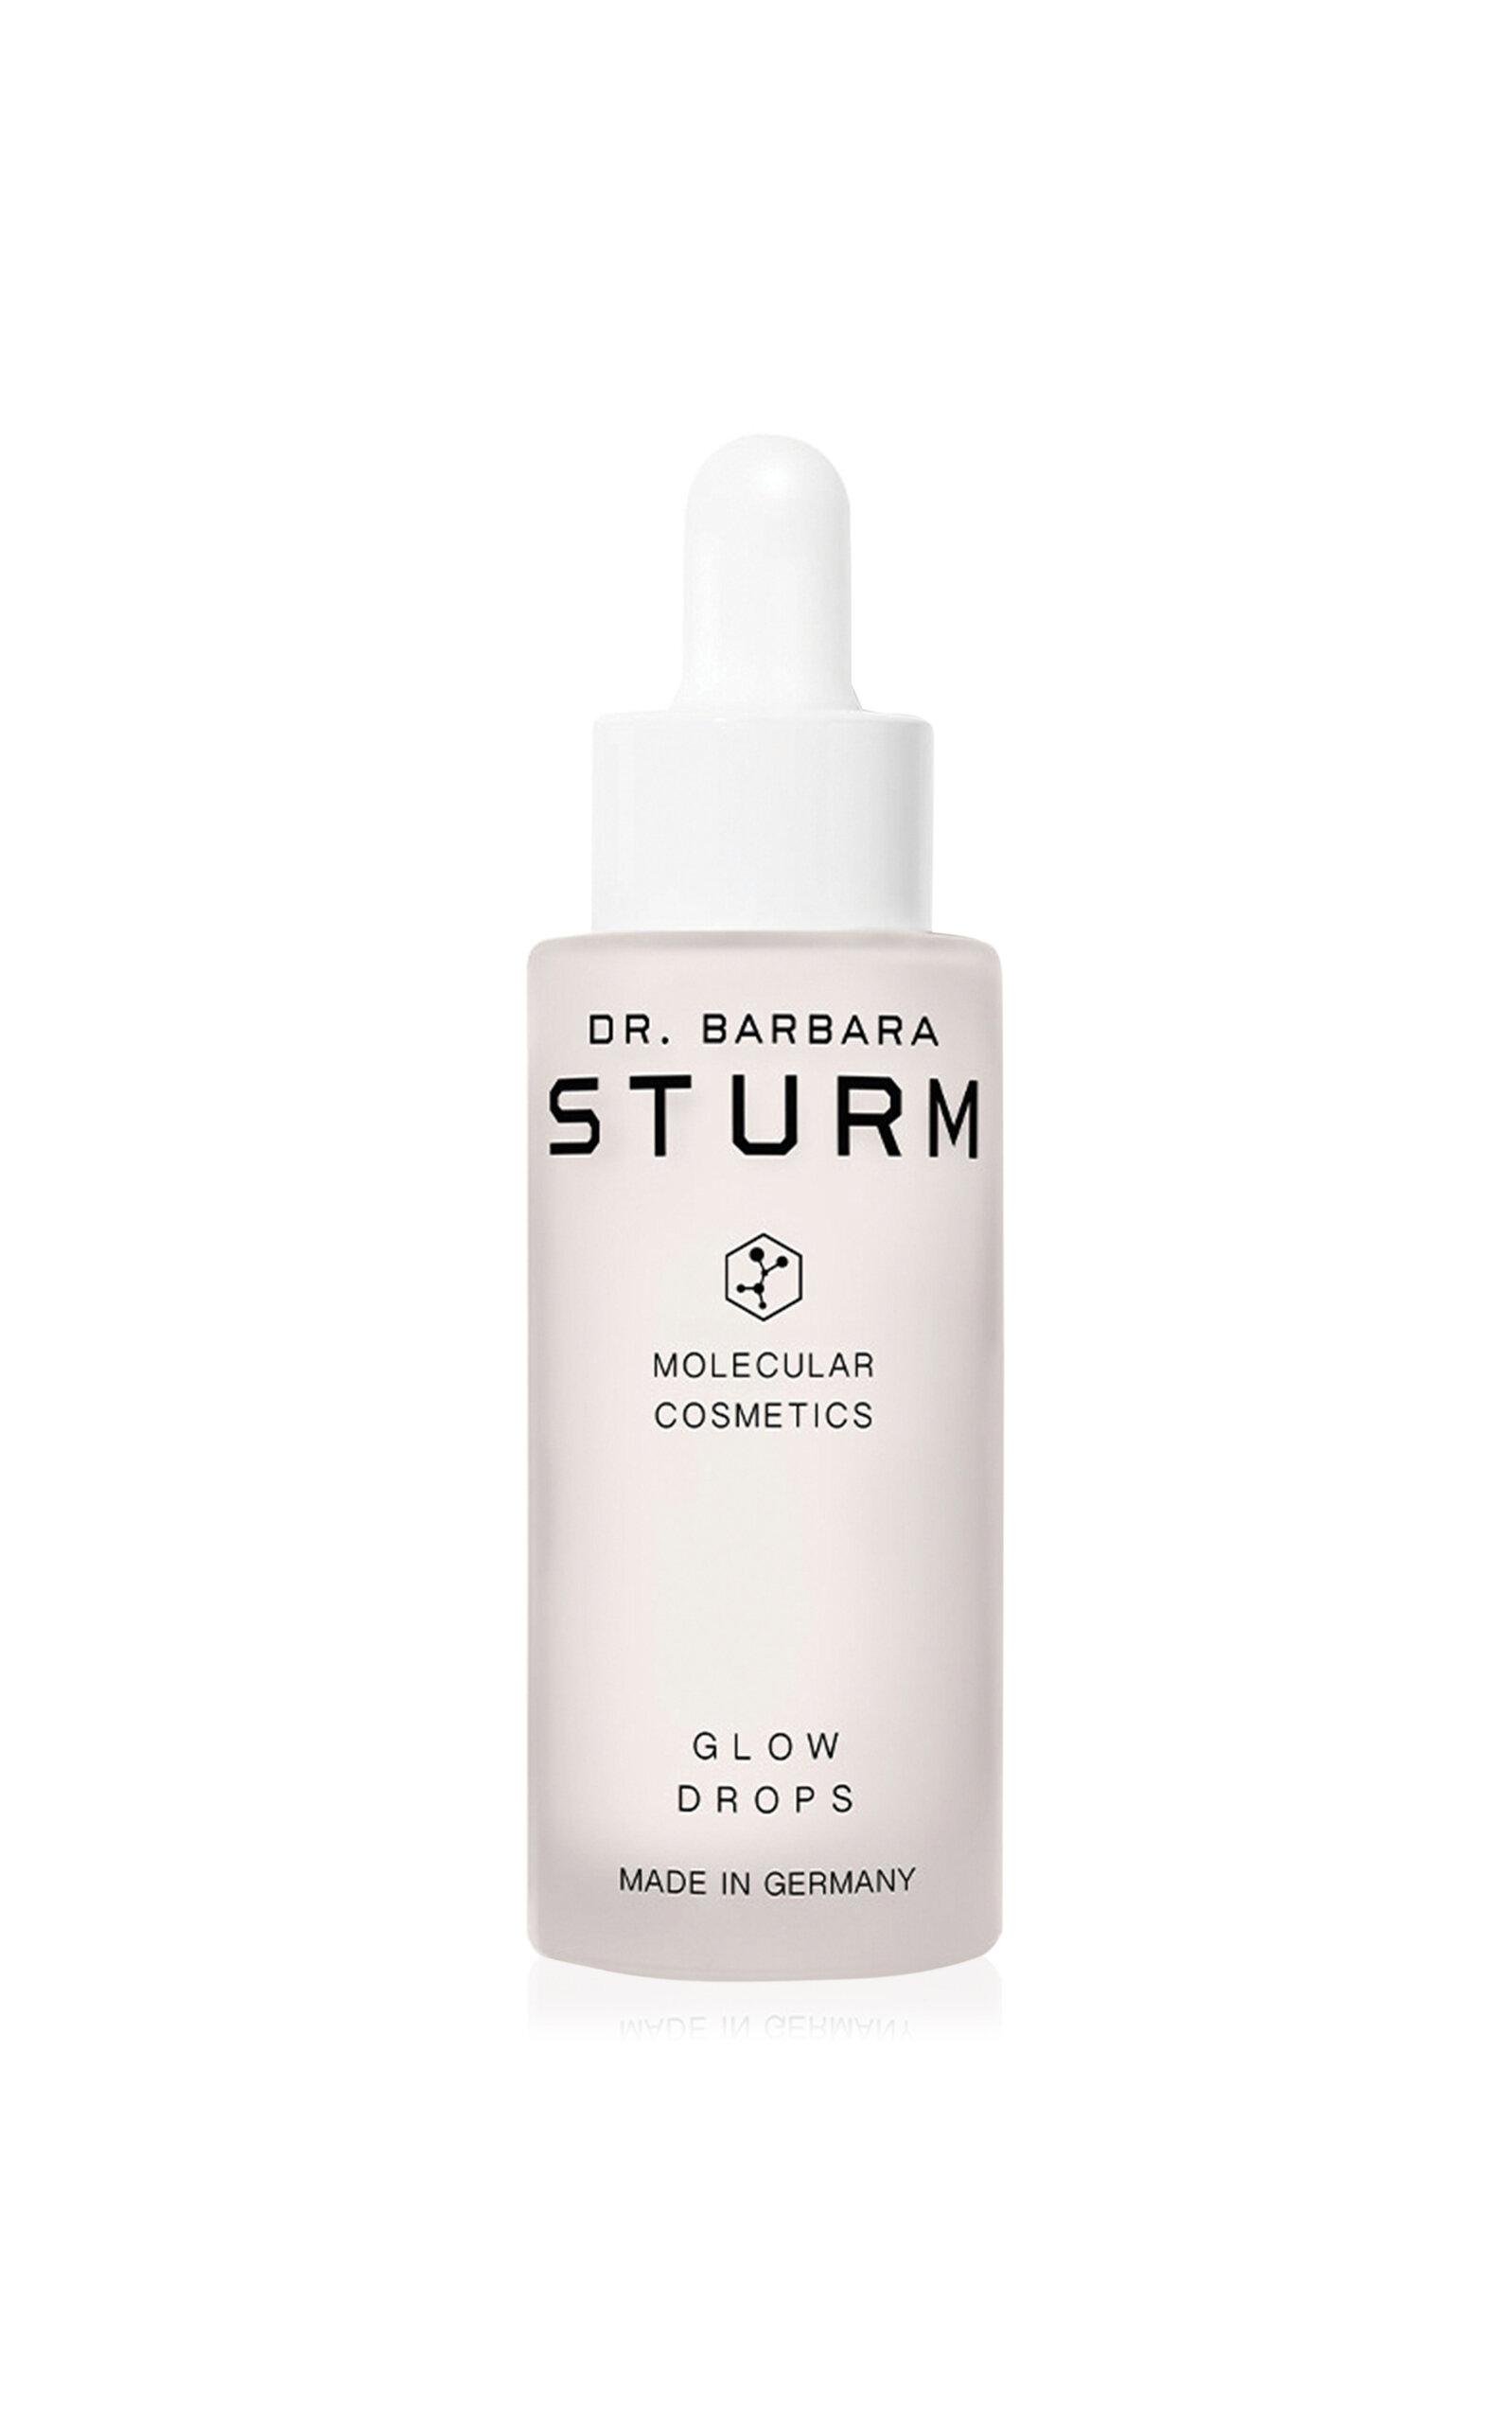 Dr. Barbara Sturm Glow Drops - Moda Operandi by DR. BARBARA STURM